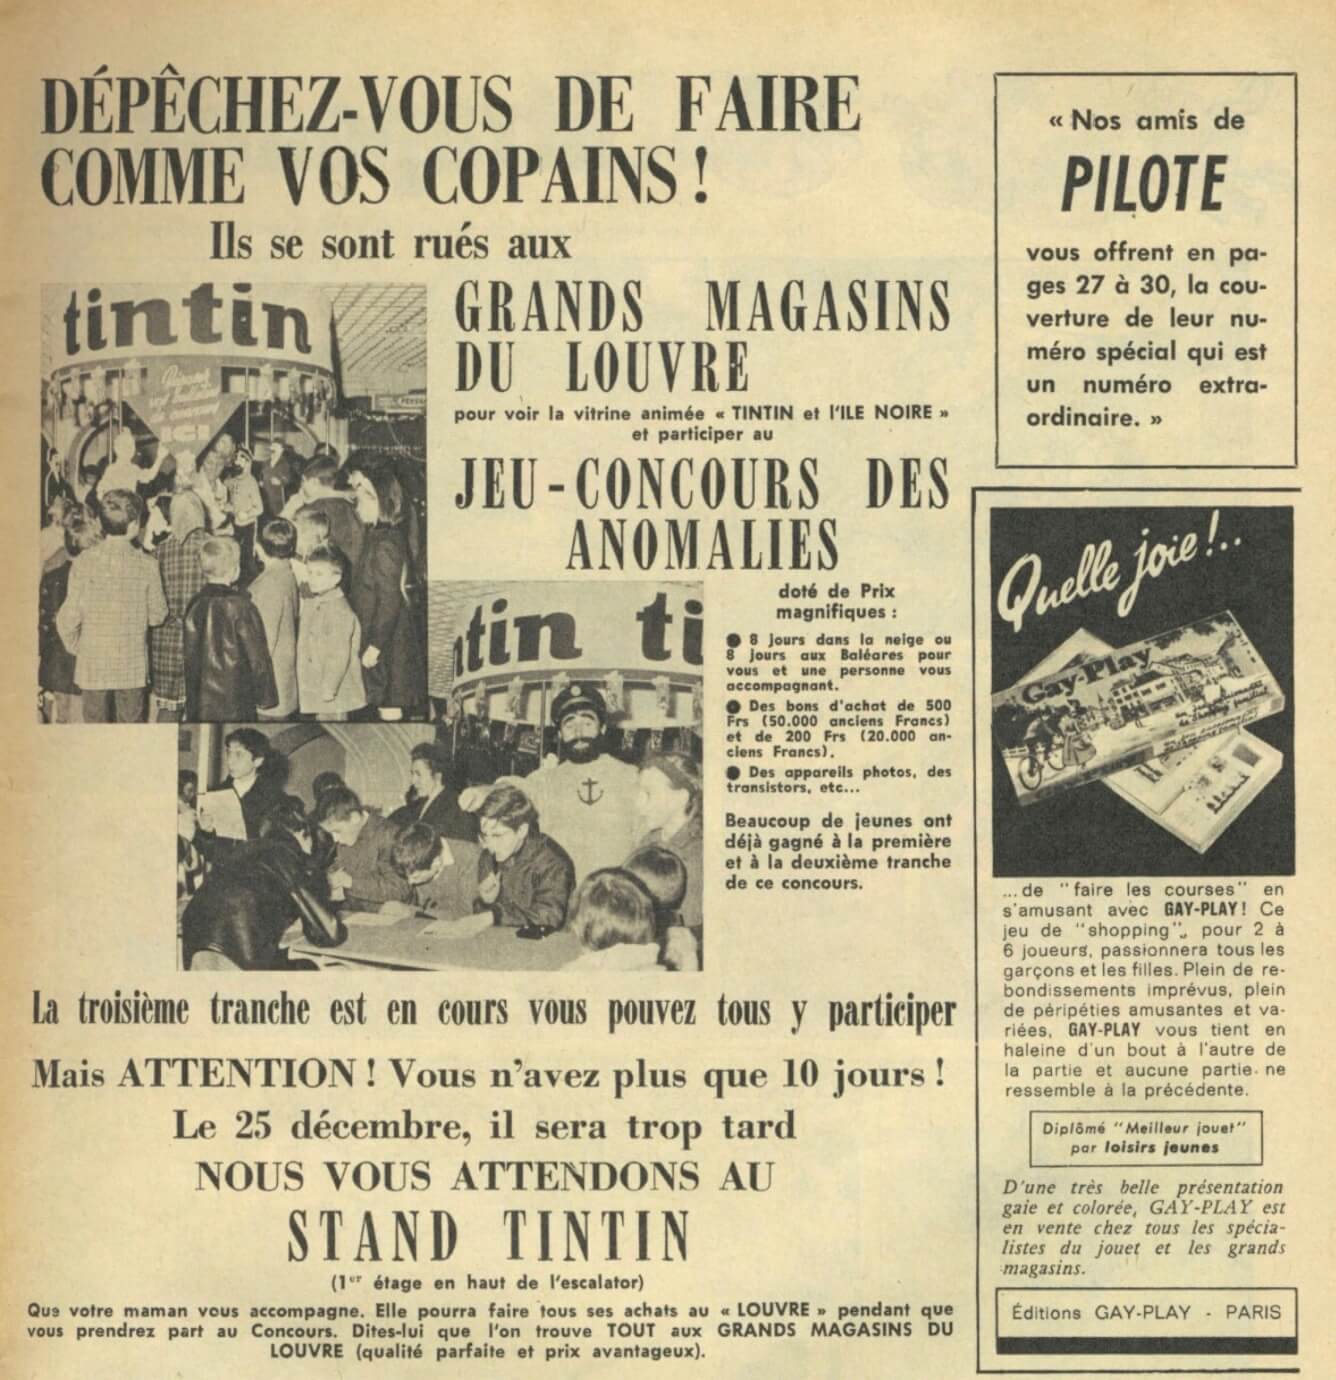 Tintin : Journal Des Jeunes De 7 A 77 Ans 22 Simple (dargaud)